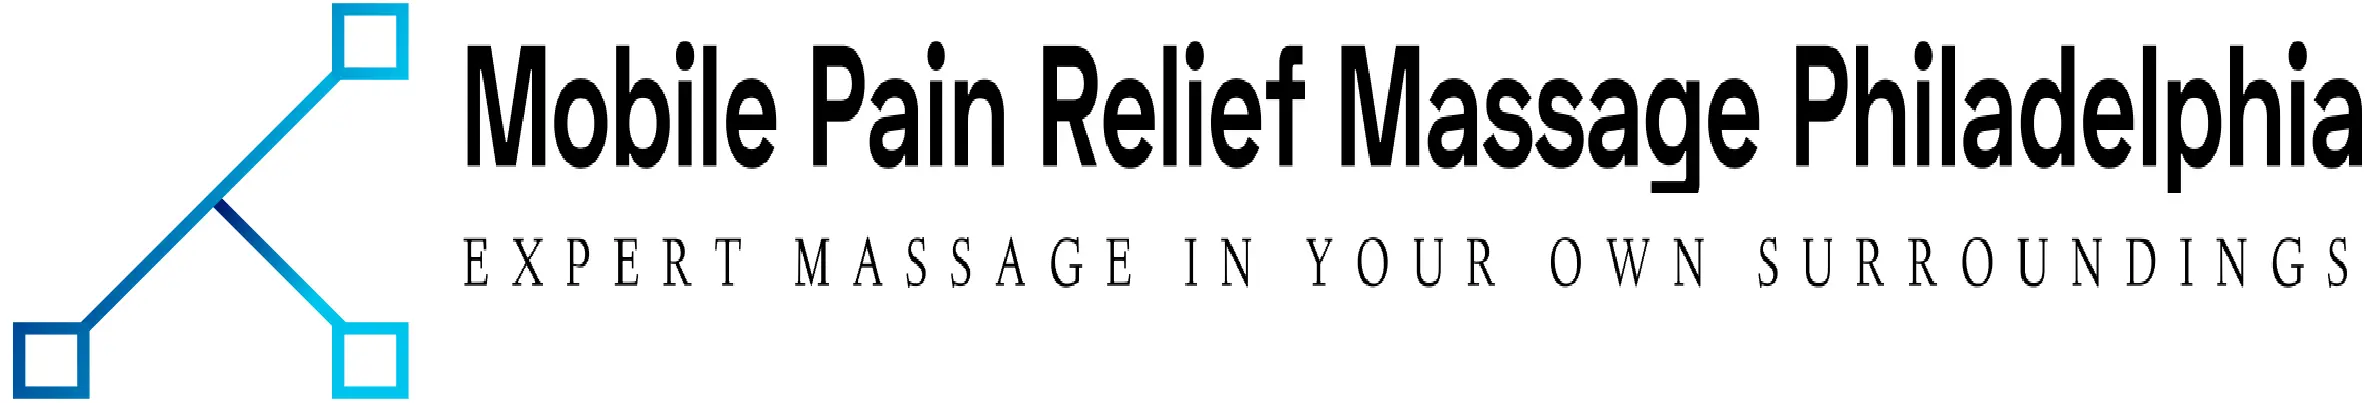 Mobile Pain Relief Massage Philadelphia Massage Services